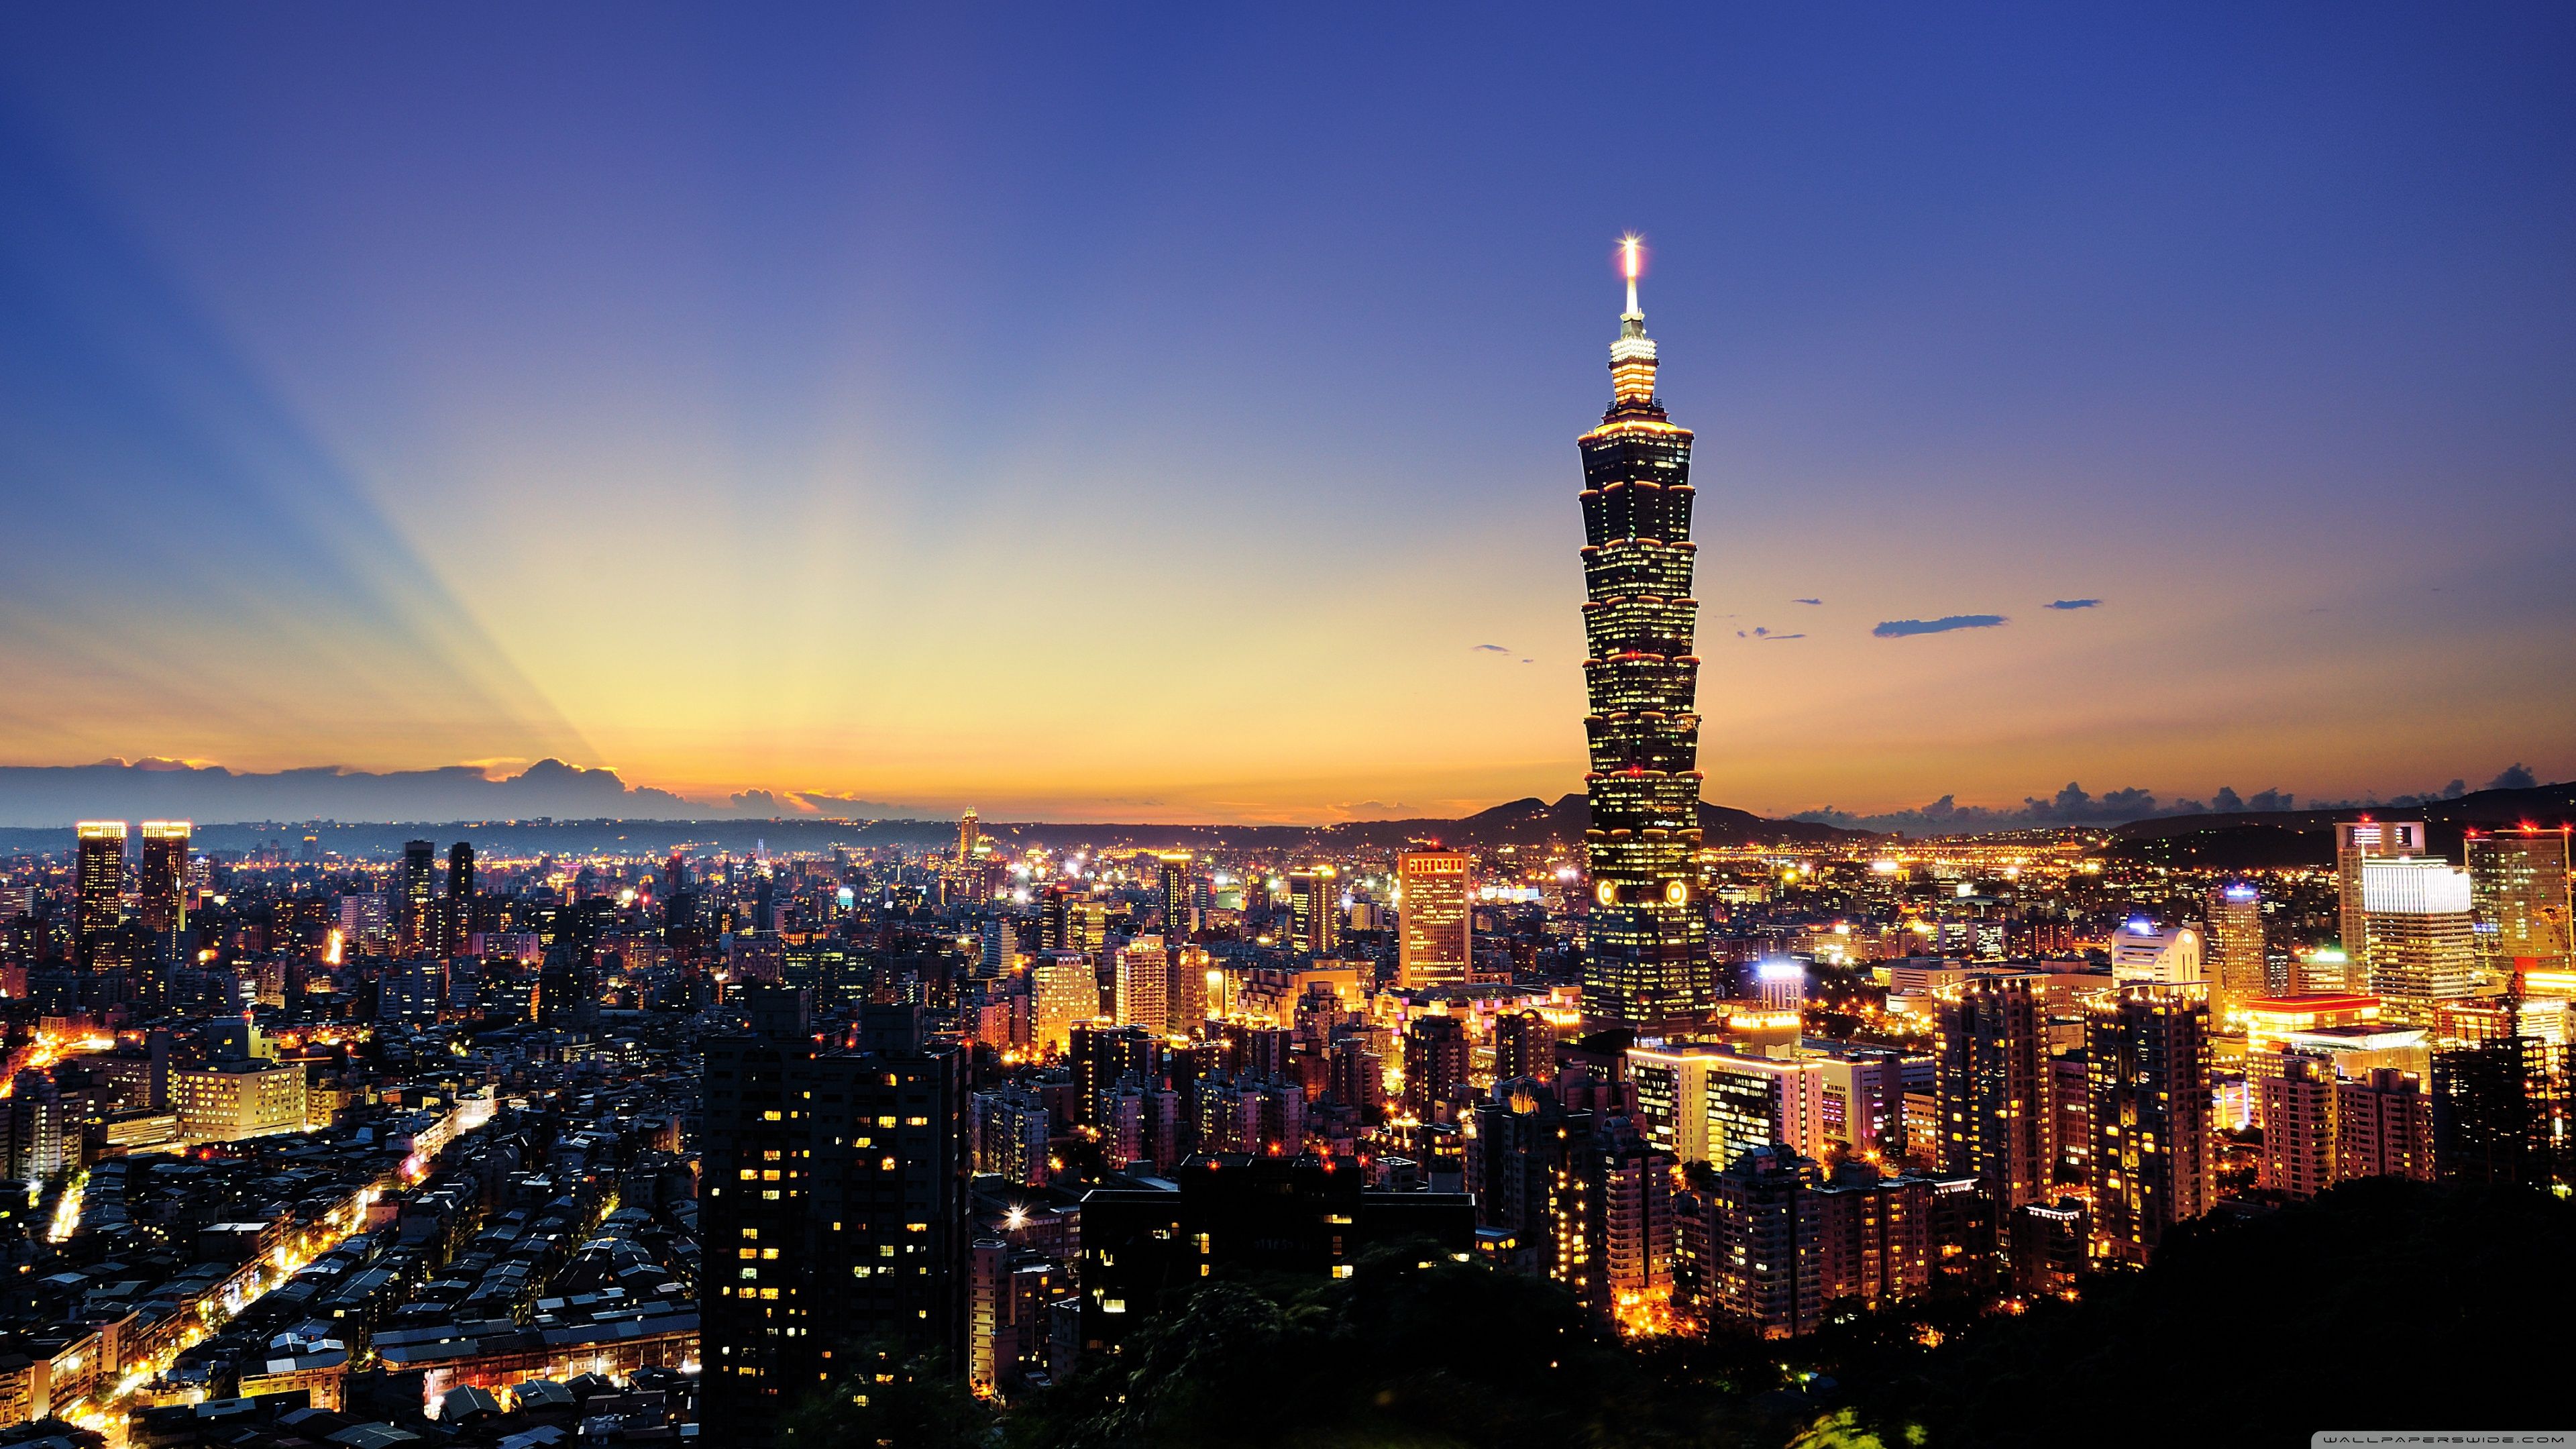 Taipei 101 HD desktop wallpaper, Widescreen, High Definition